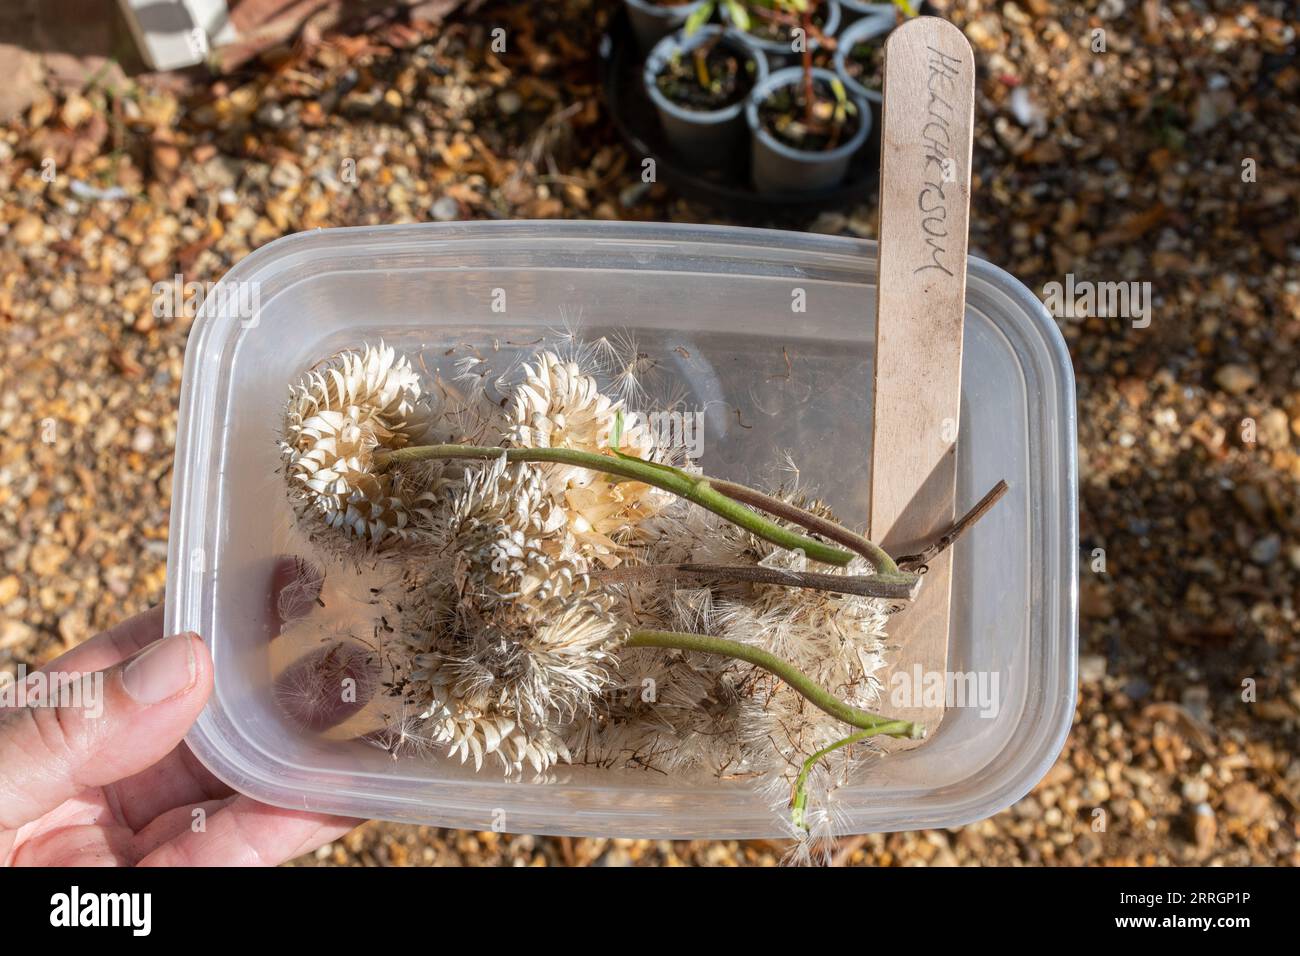 Semi di Helichrysum raccolti da teste di semi di fiori eterni in un contenitore di plastica da essiccare e piantare, Regno Unito Foto Stock